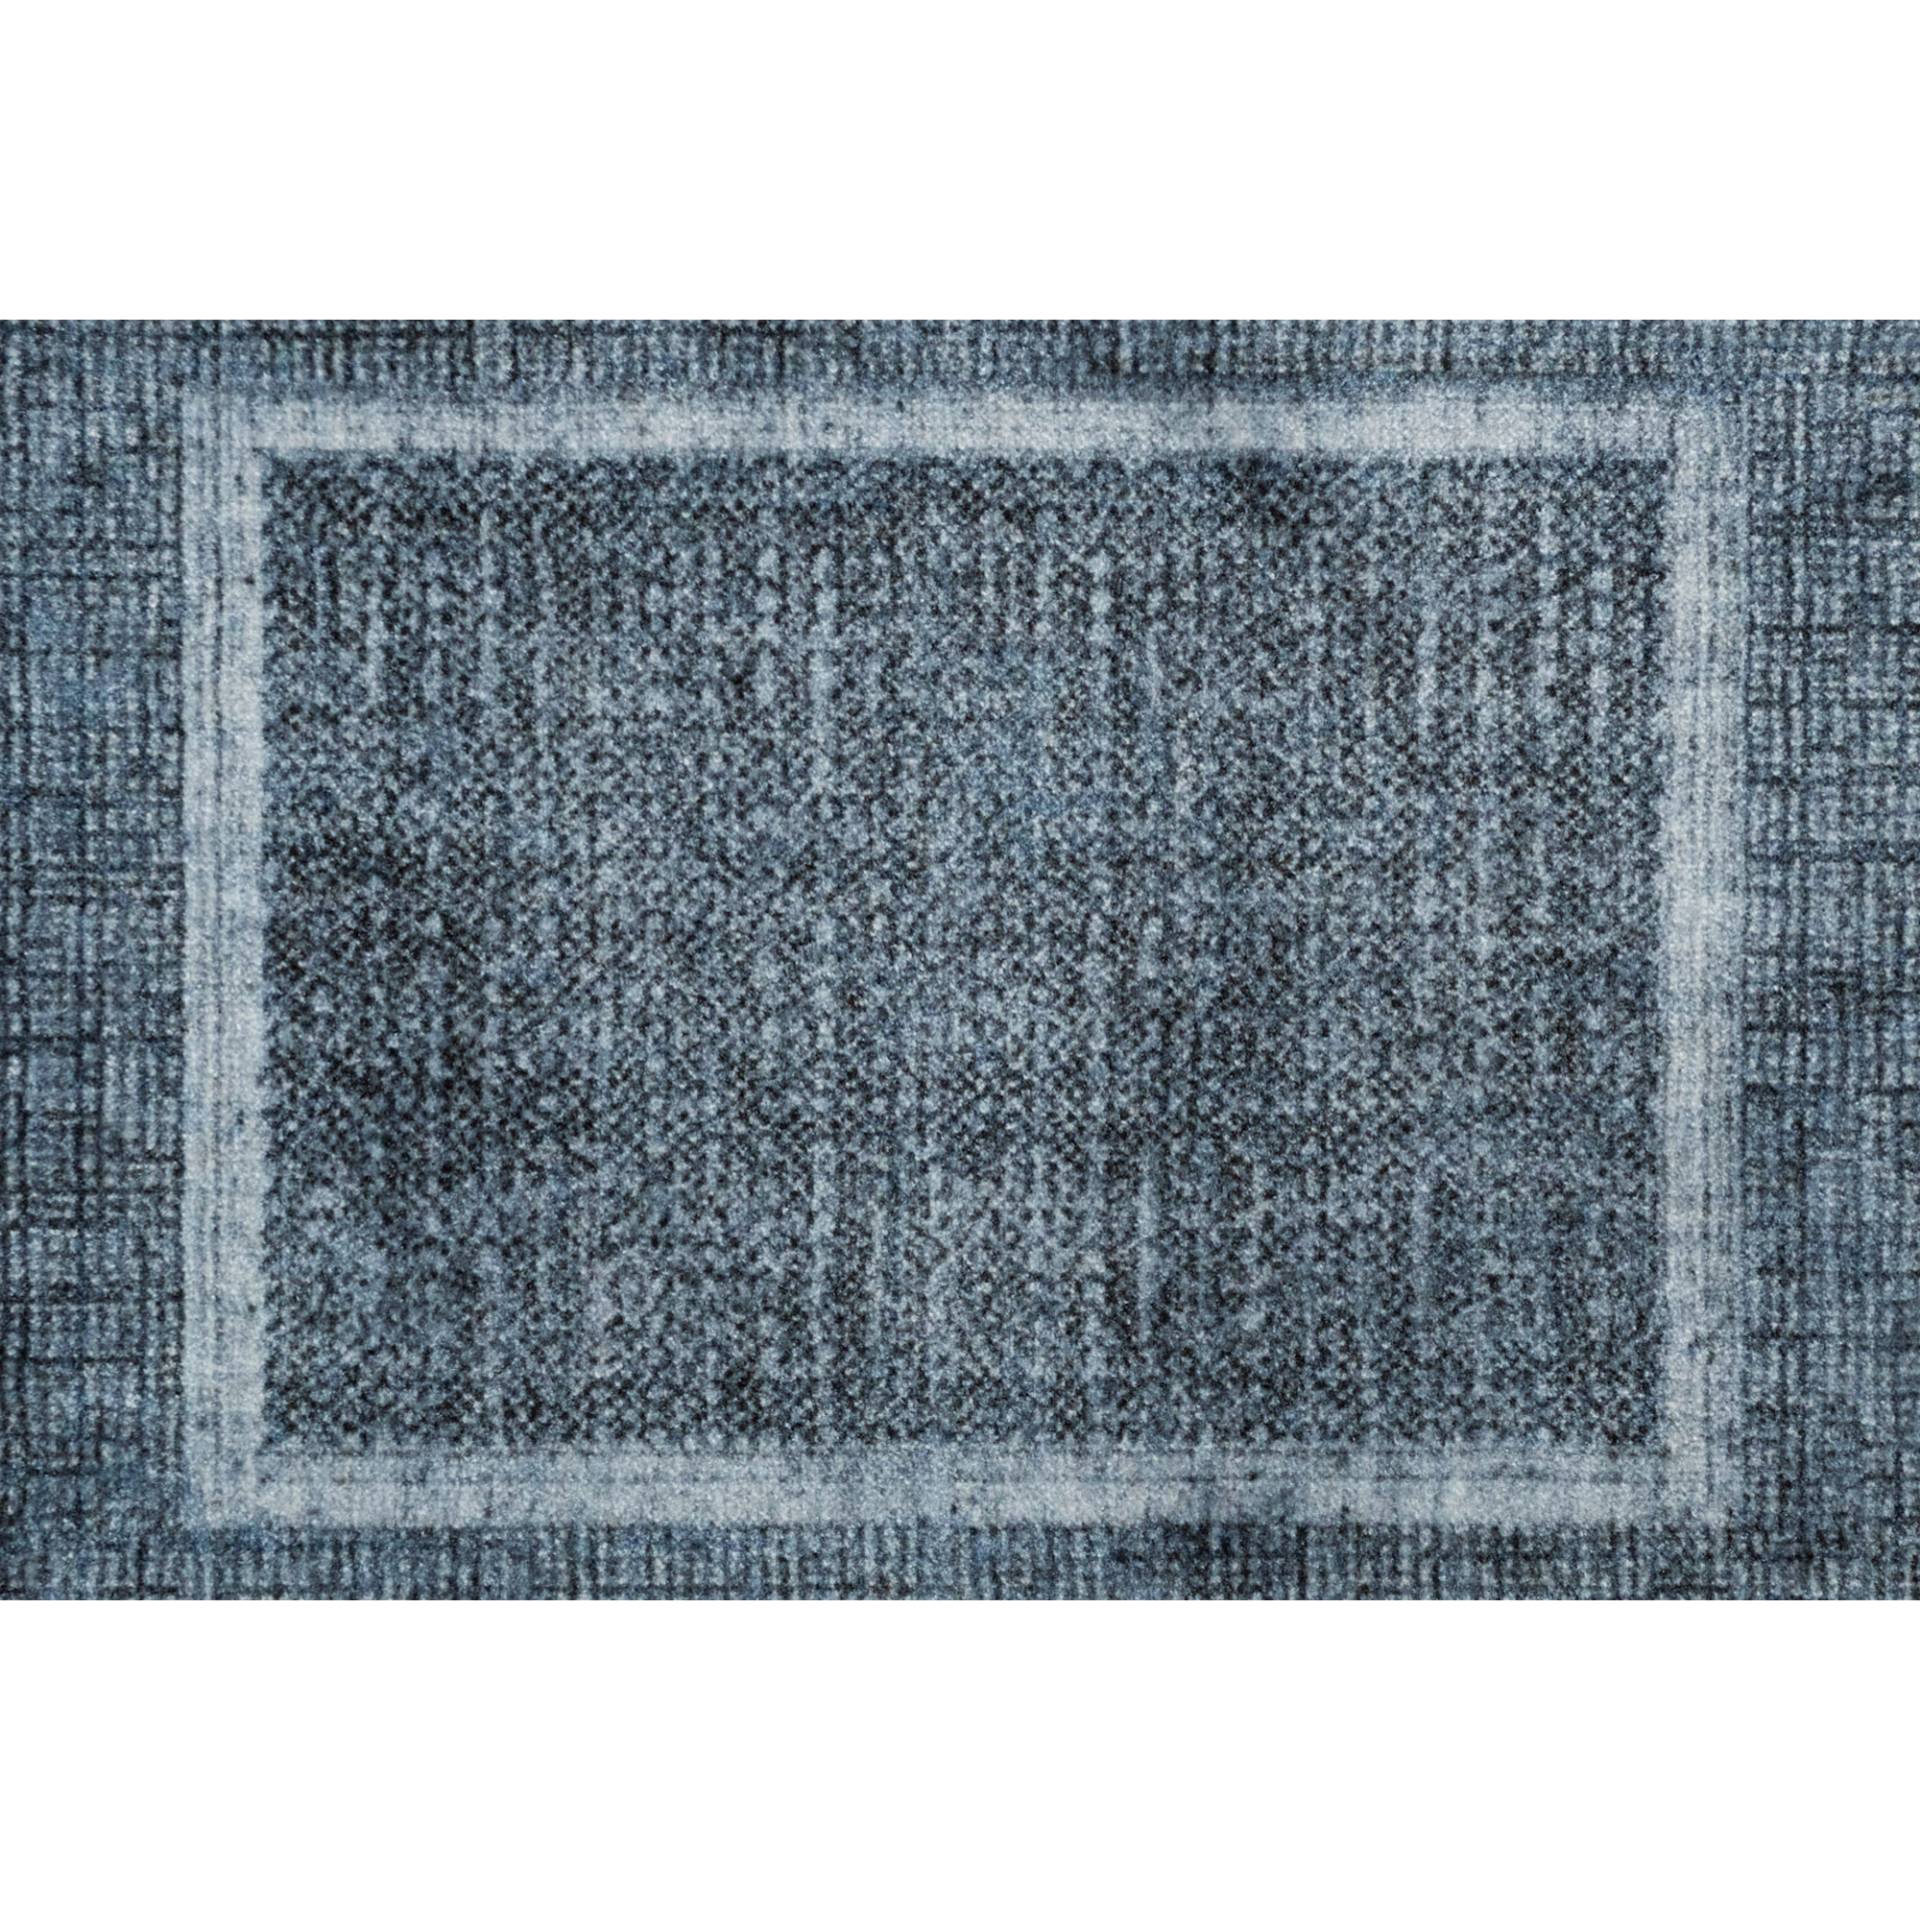 Barbara Becker Fußmatte 'BB Square' trueblue 67 x 110 cm von barbara becker